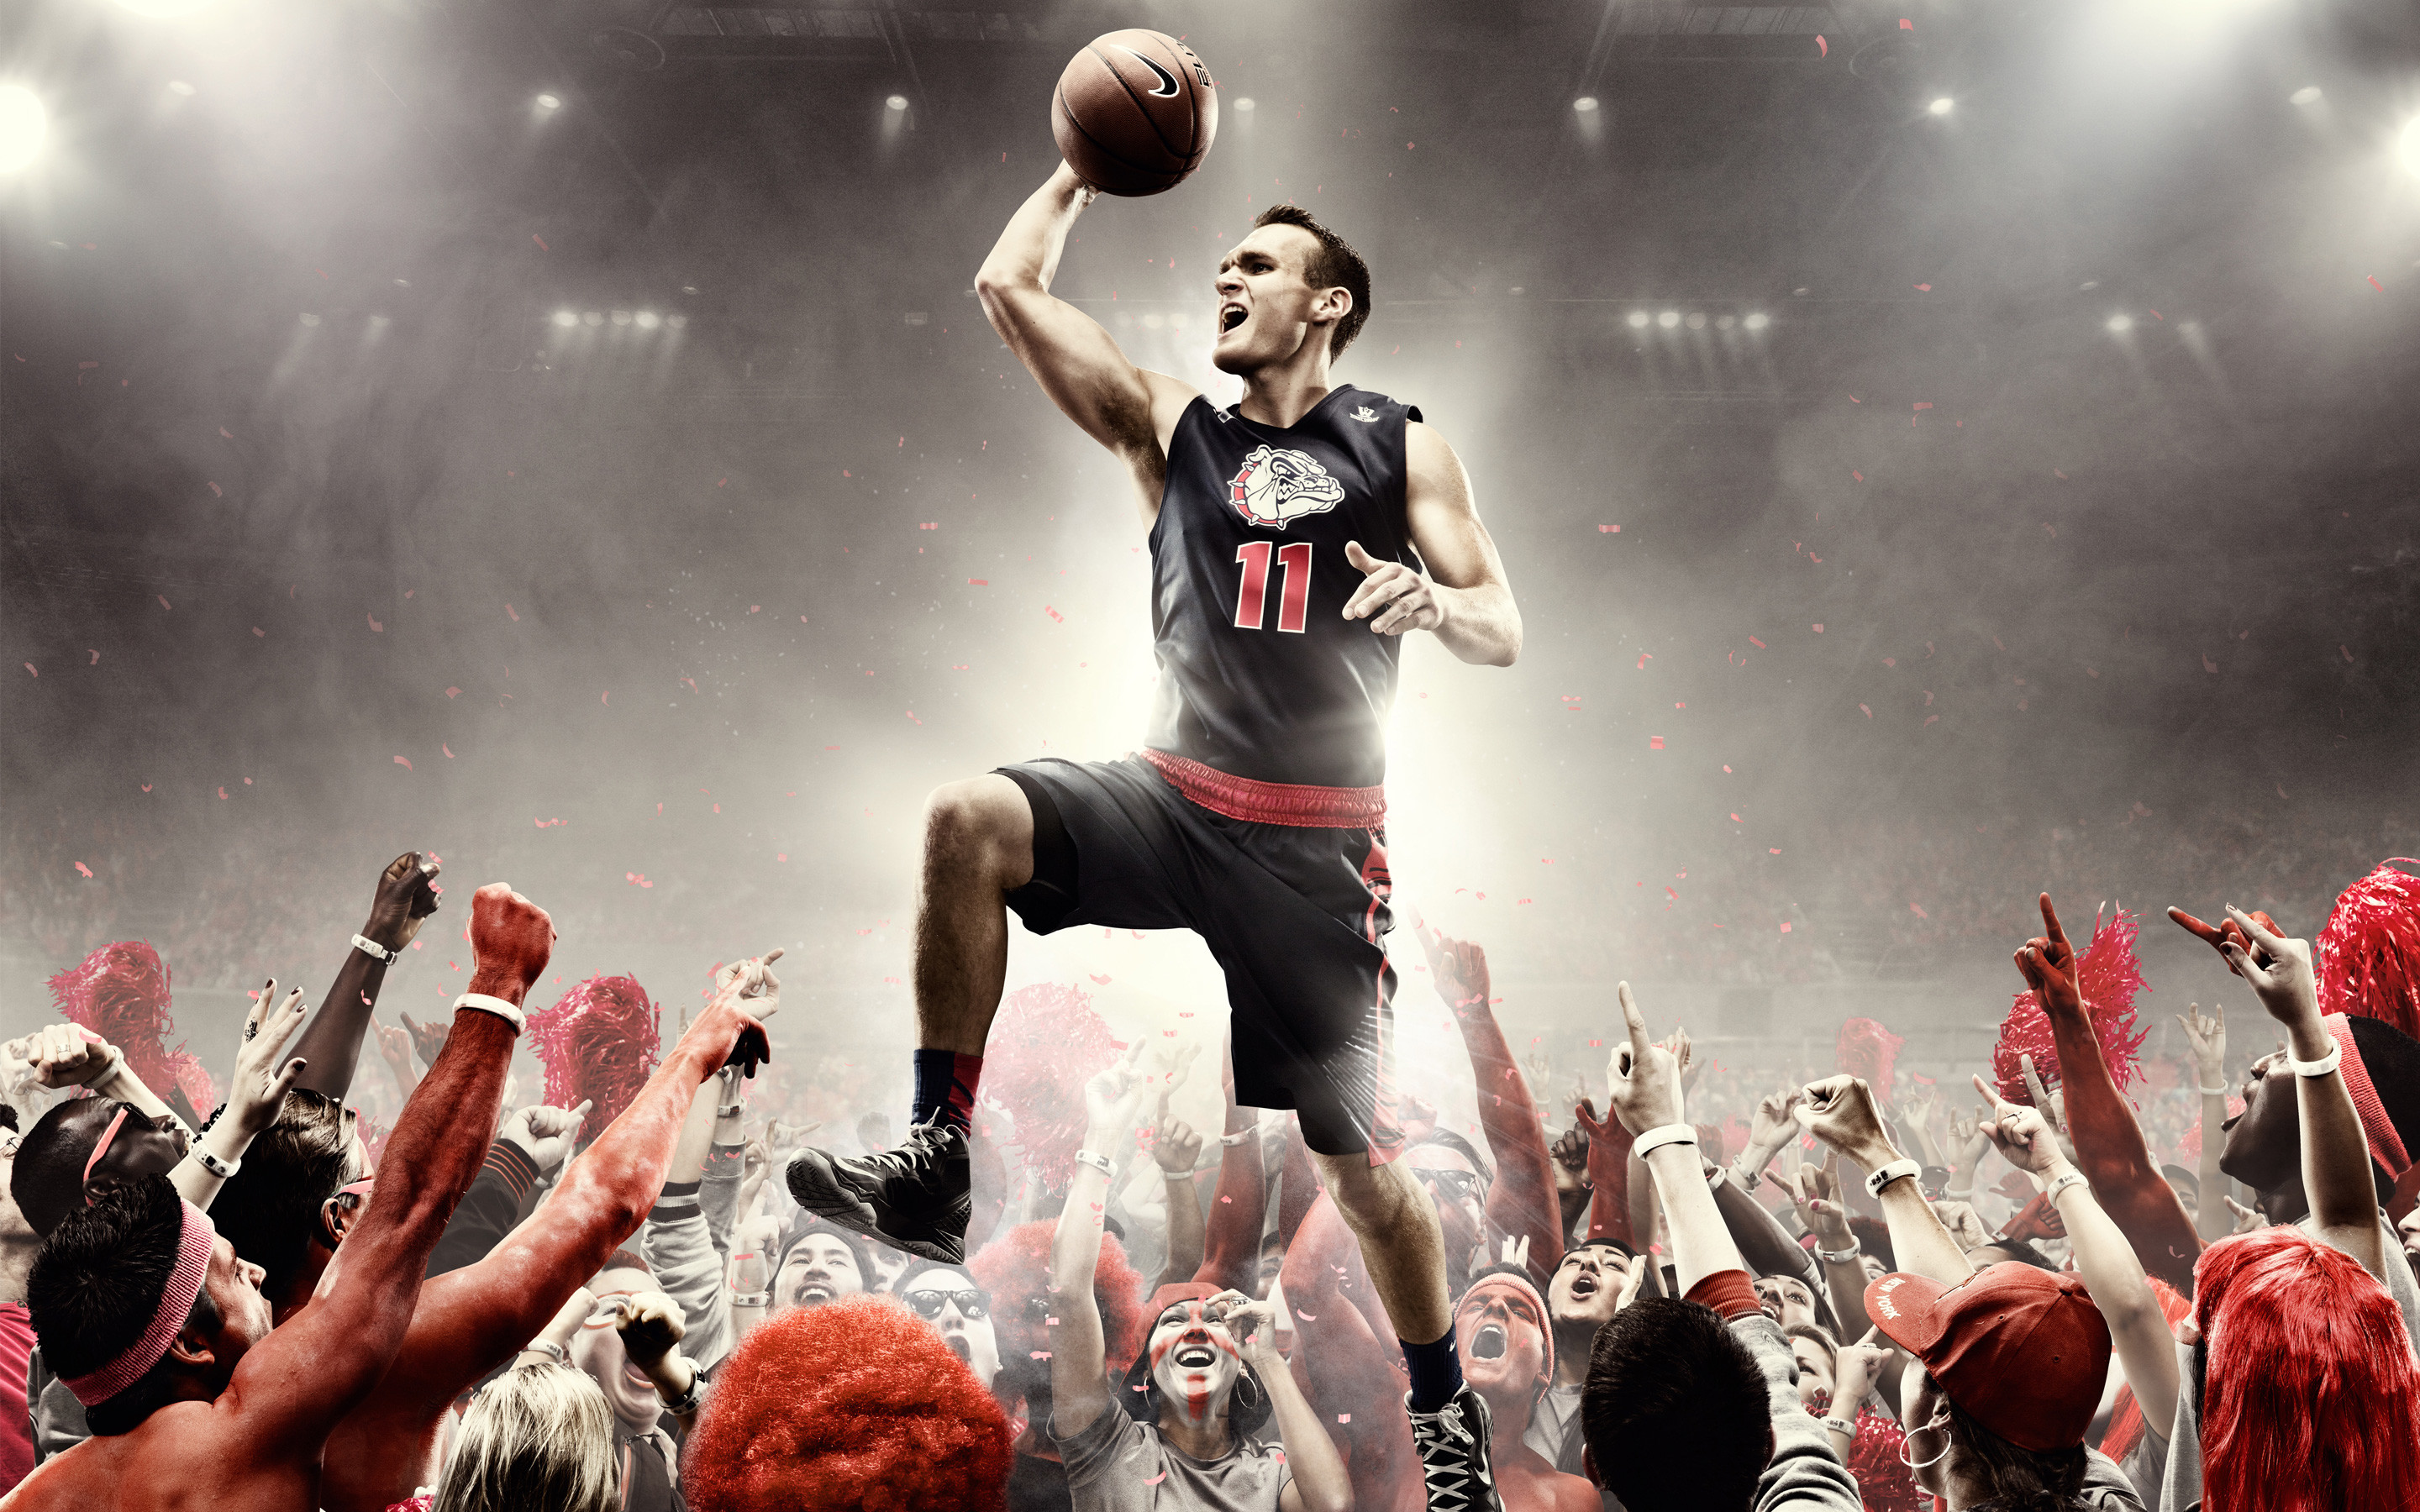 2880x1800 ... 10 Best Basketball Backgrounds | FreeCreatives ...